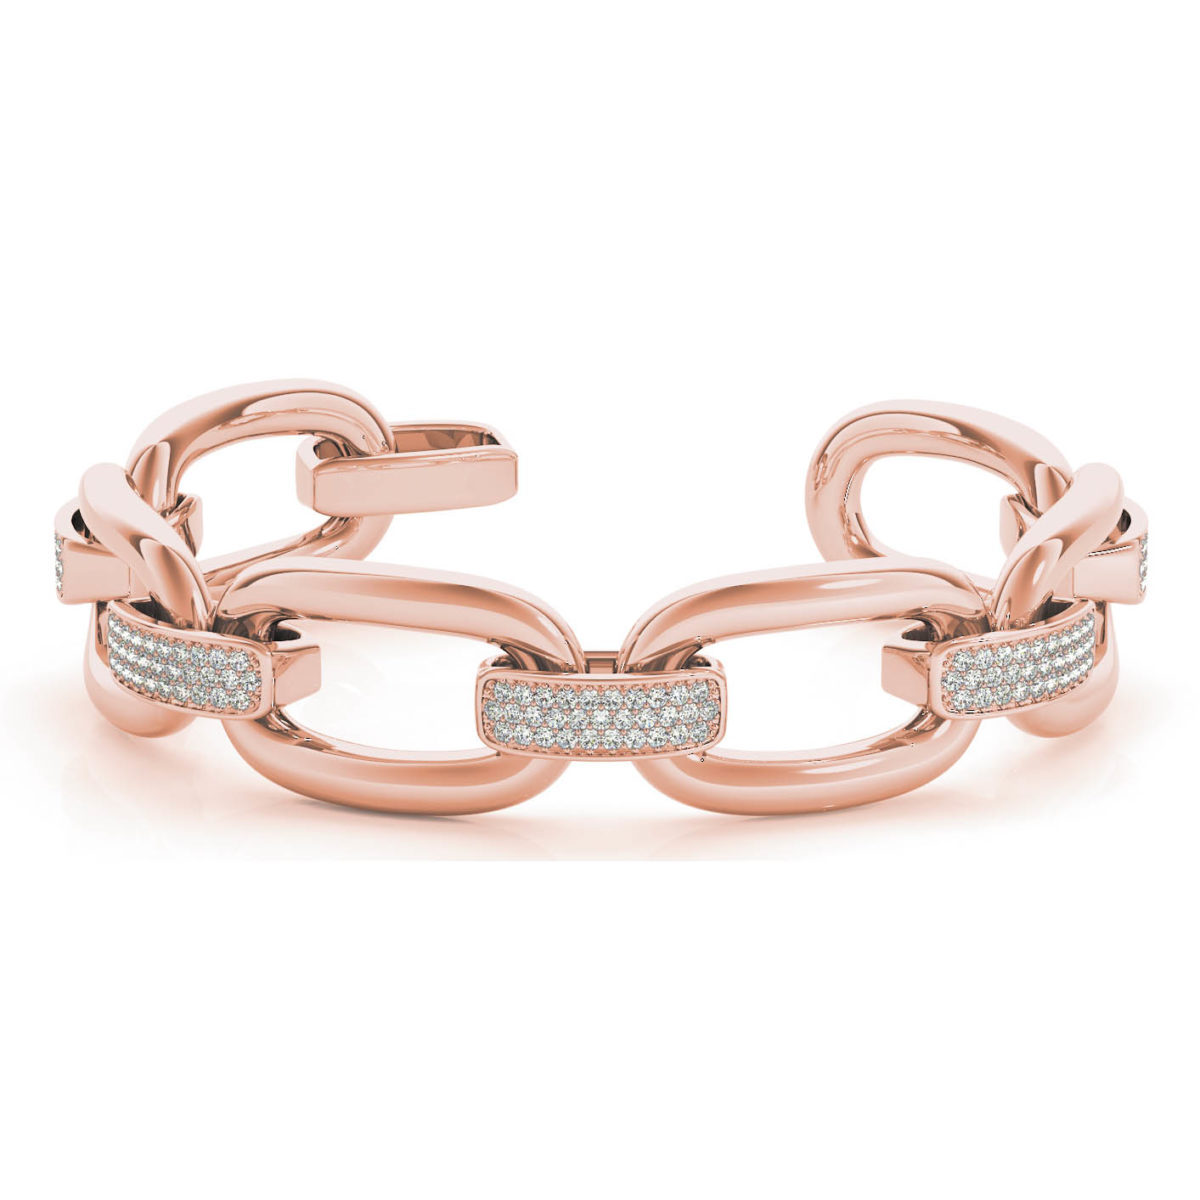 Rectangular Linked Diamond Bracelet 1.62 Carats - Sarkisians Jewelry